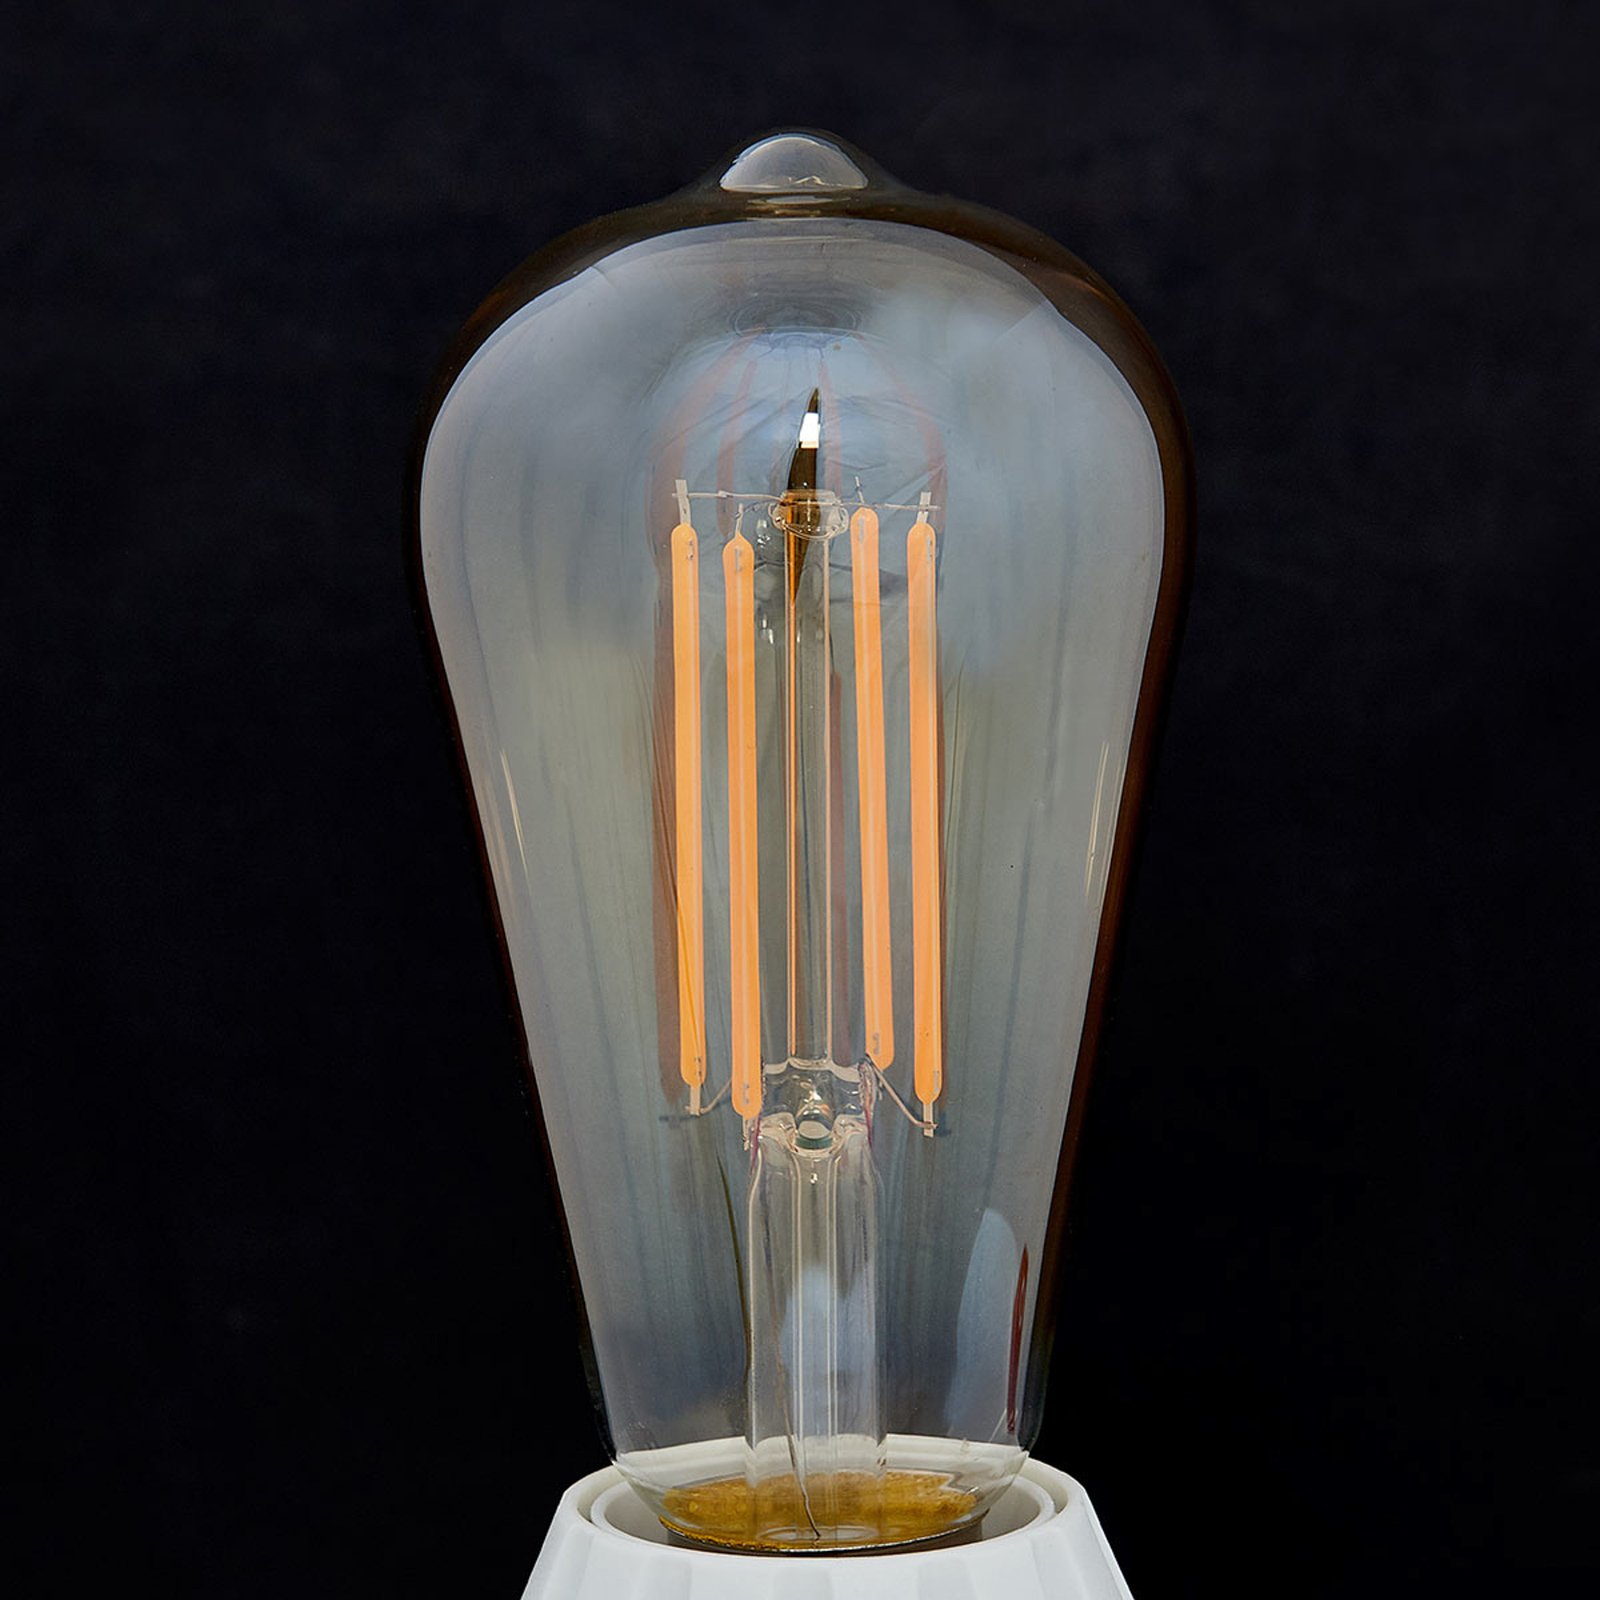 E27 rustic LED bulb 6W 500lm amber 1,800K 2-pack